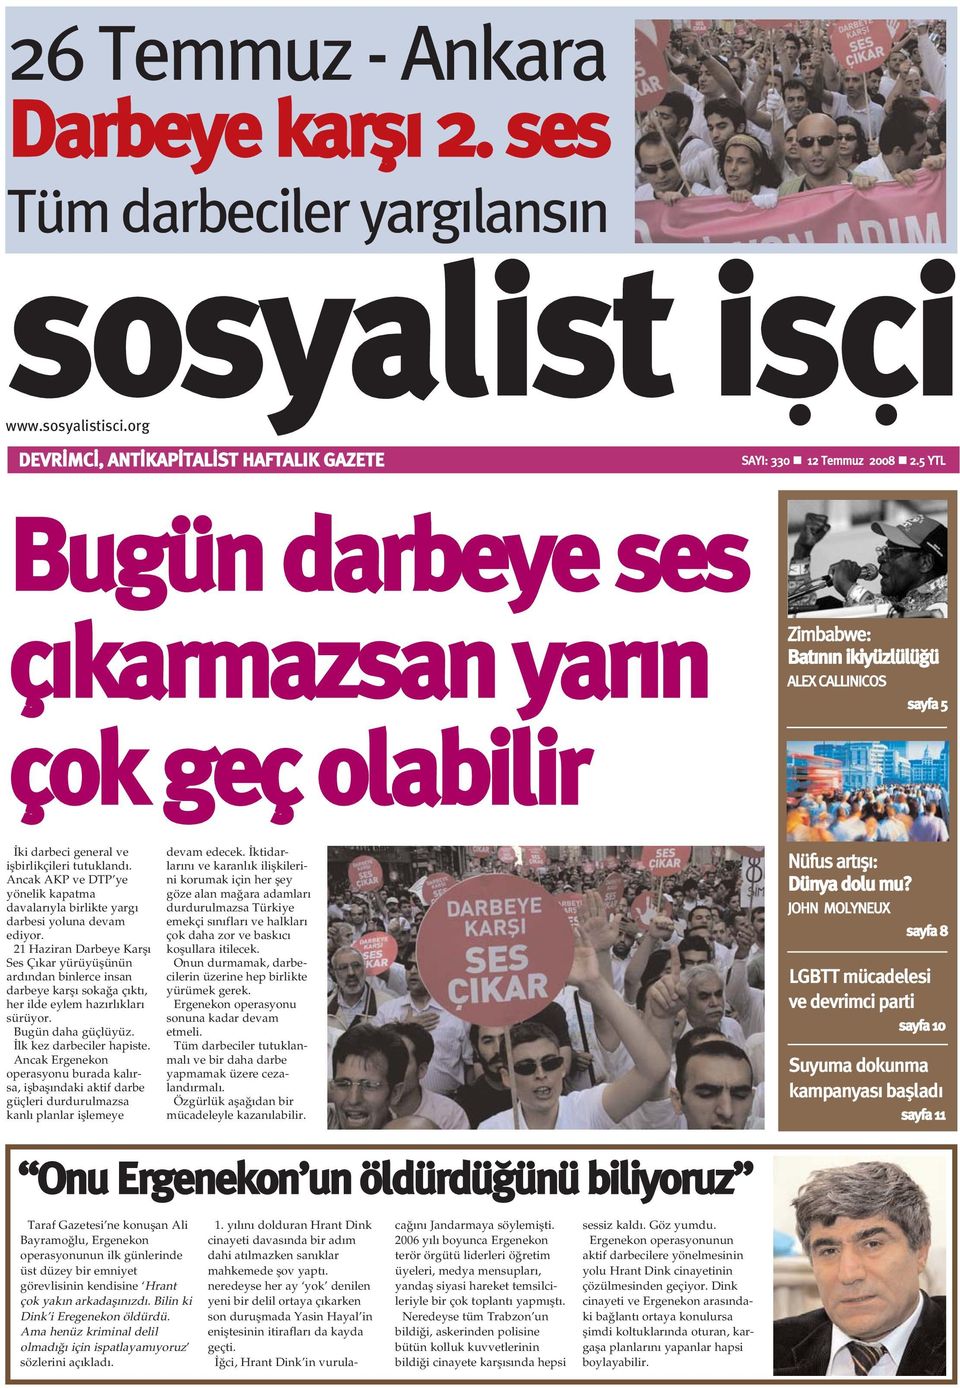 Ancak AKP ve DTP ye yönelik kapatma davalarýyla birlikte yargý darbesi yoluna devam ediyor.